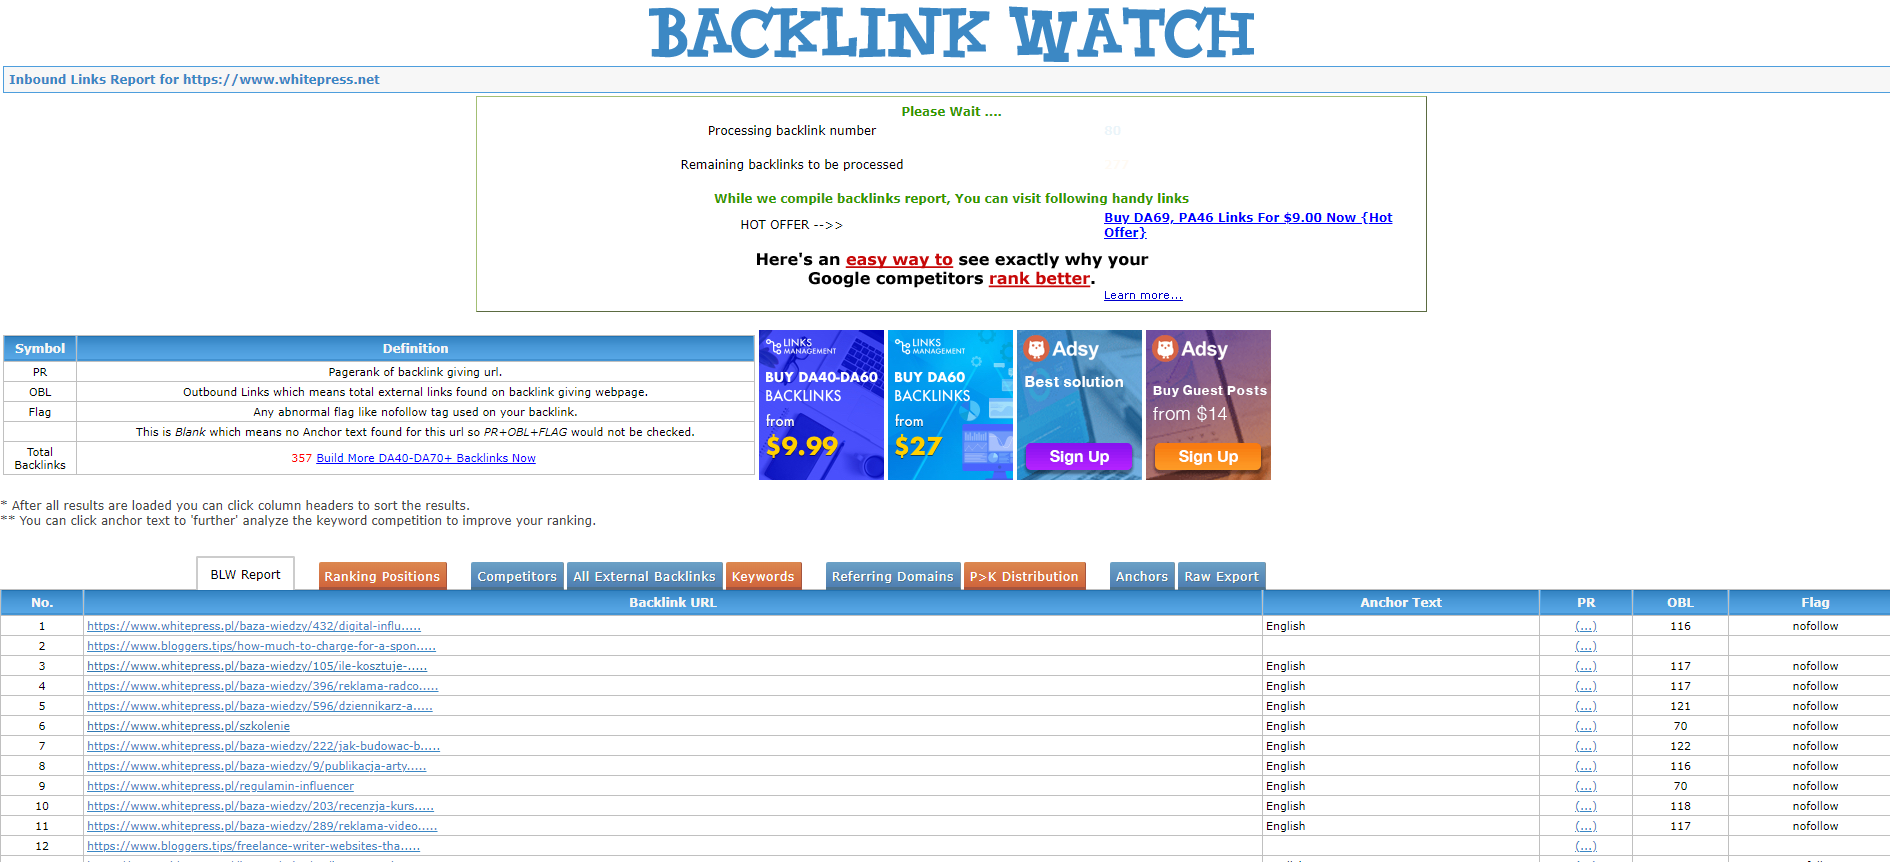 Backlink Watch software